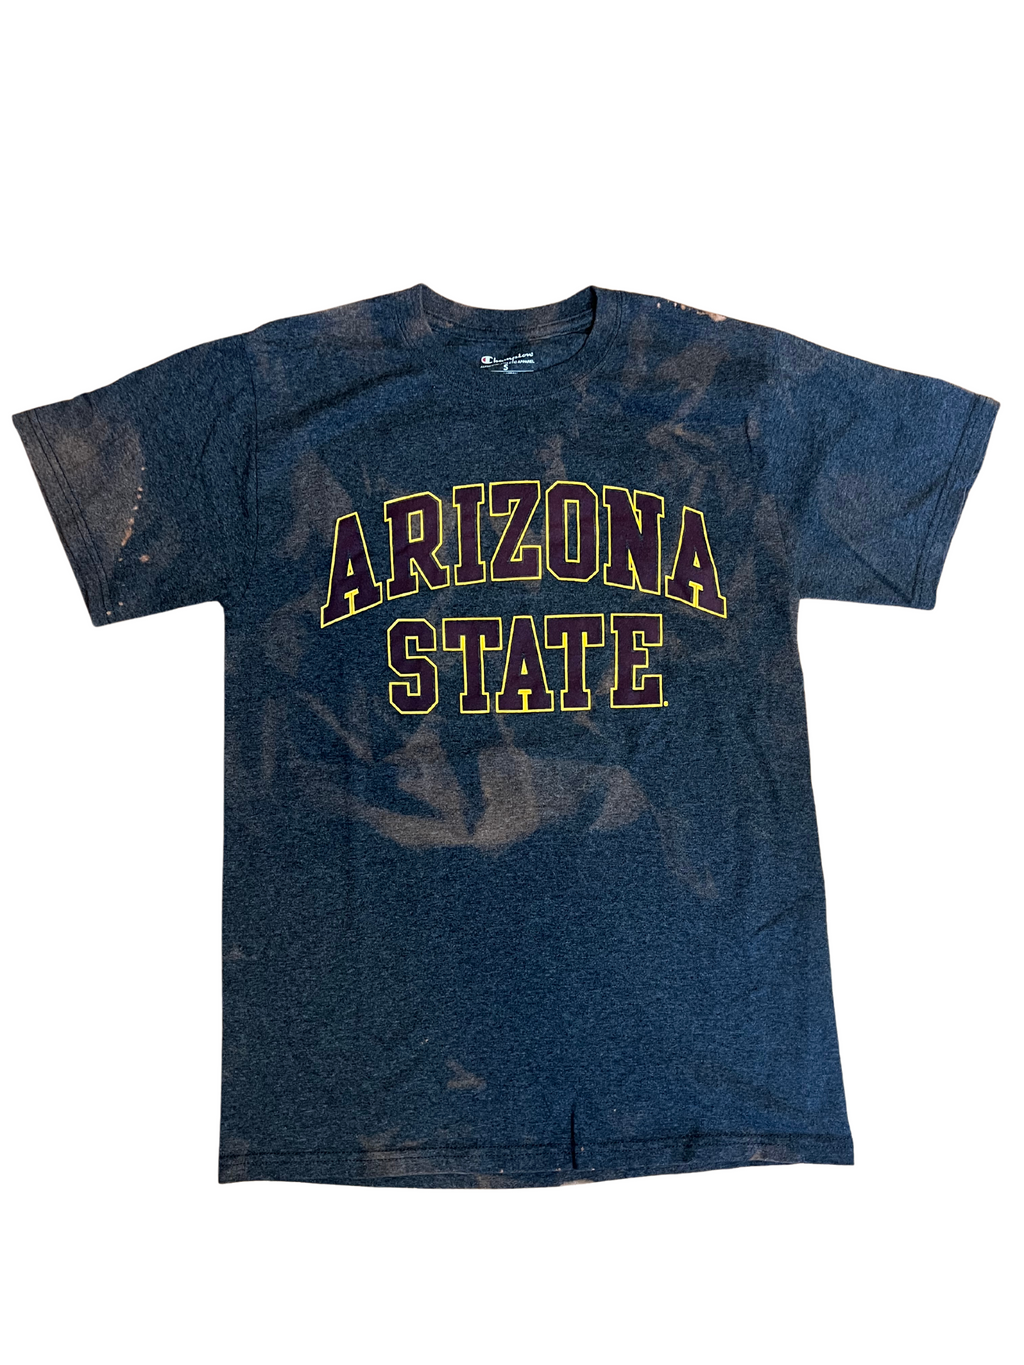 Arizona State University Bleached Shirt